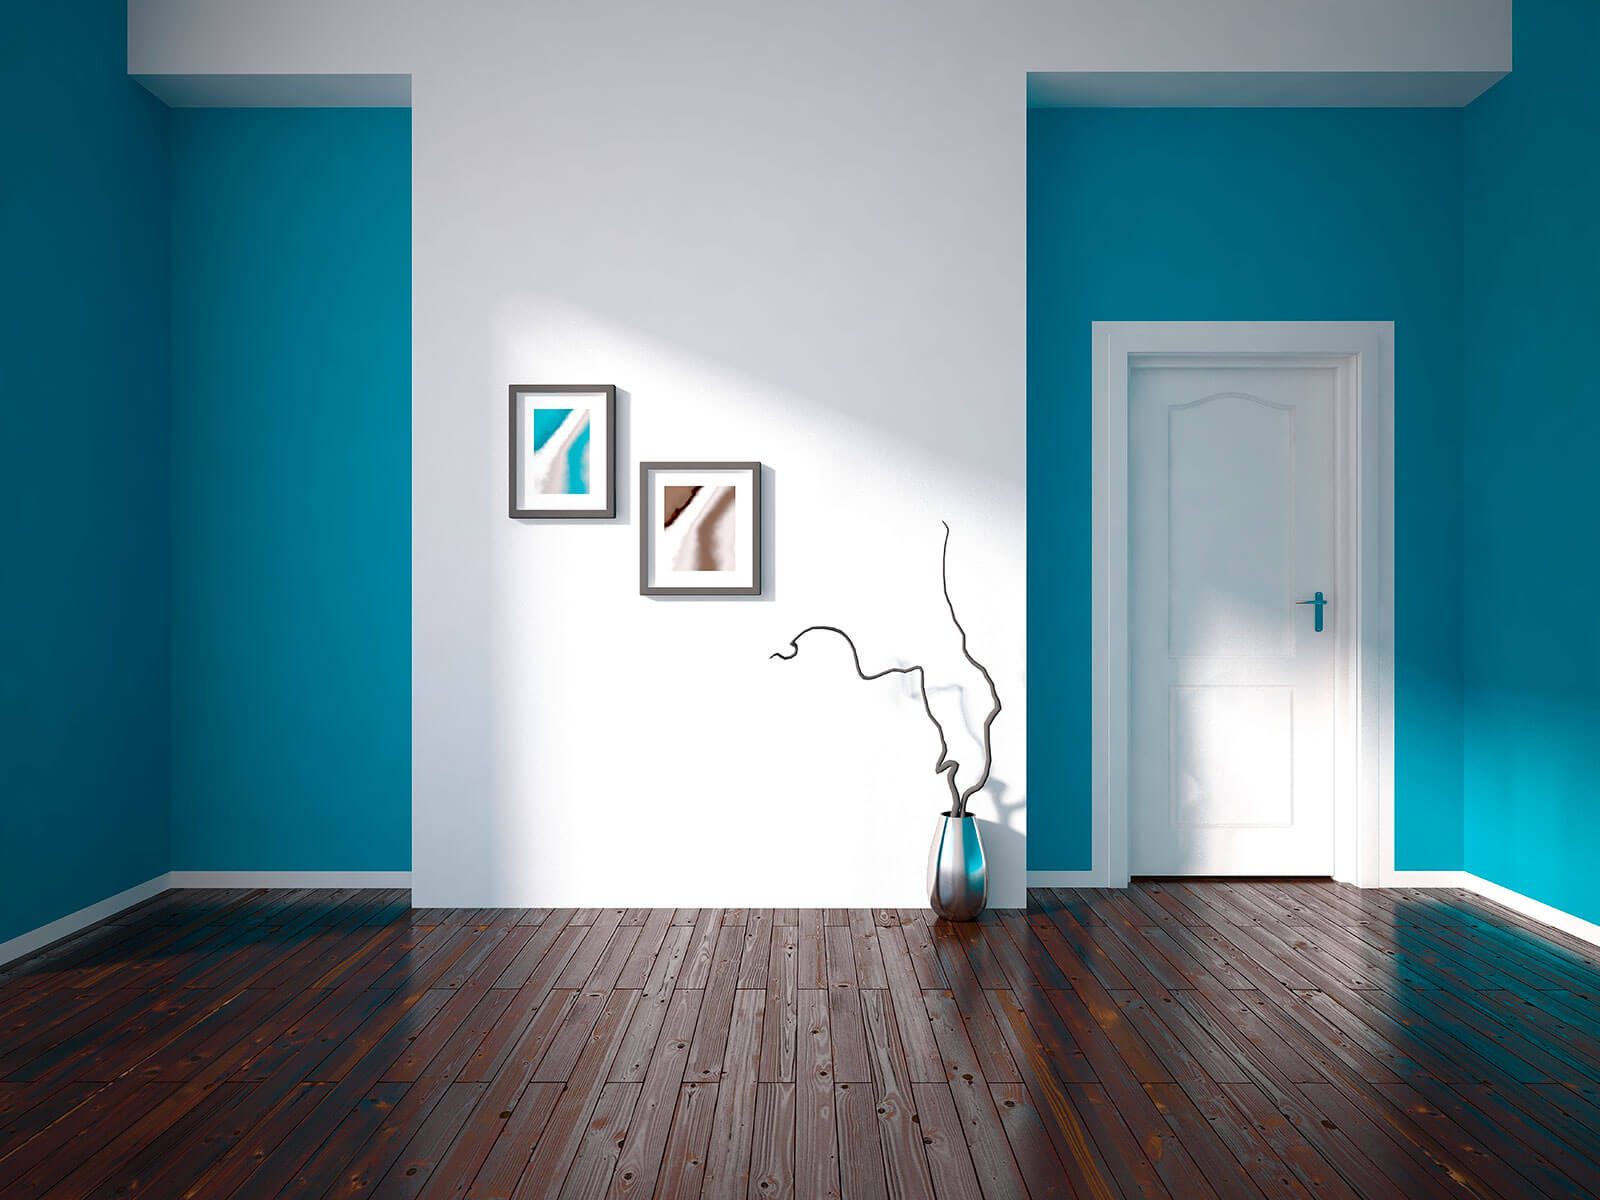 Темный пол голубые стены. Крашеные стены. Краска в интерьере квартиры. Покрашенные стены. Крашеные стены в квартире.